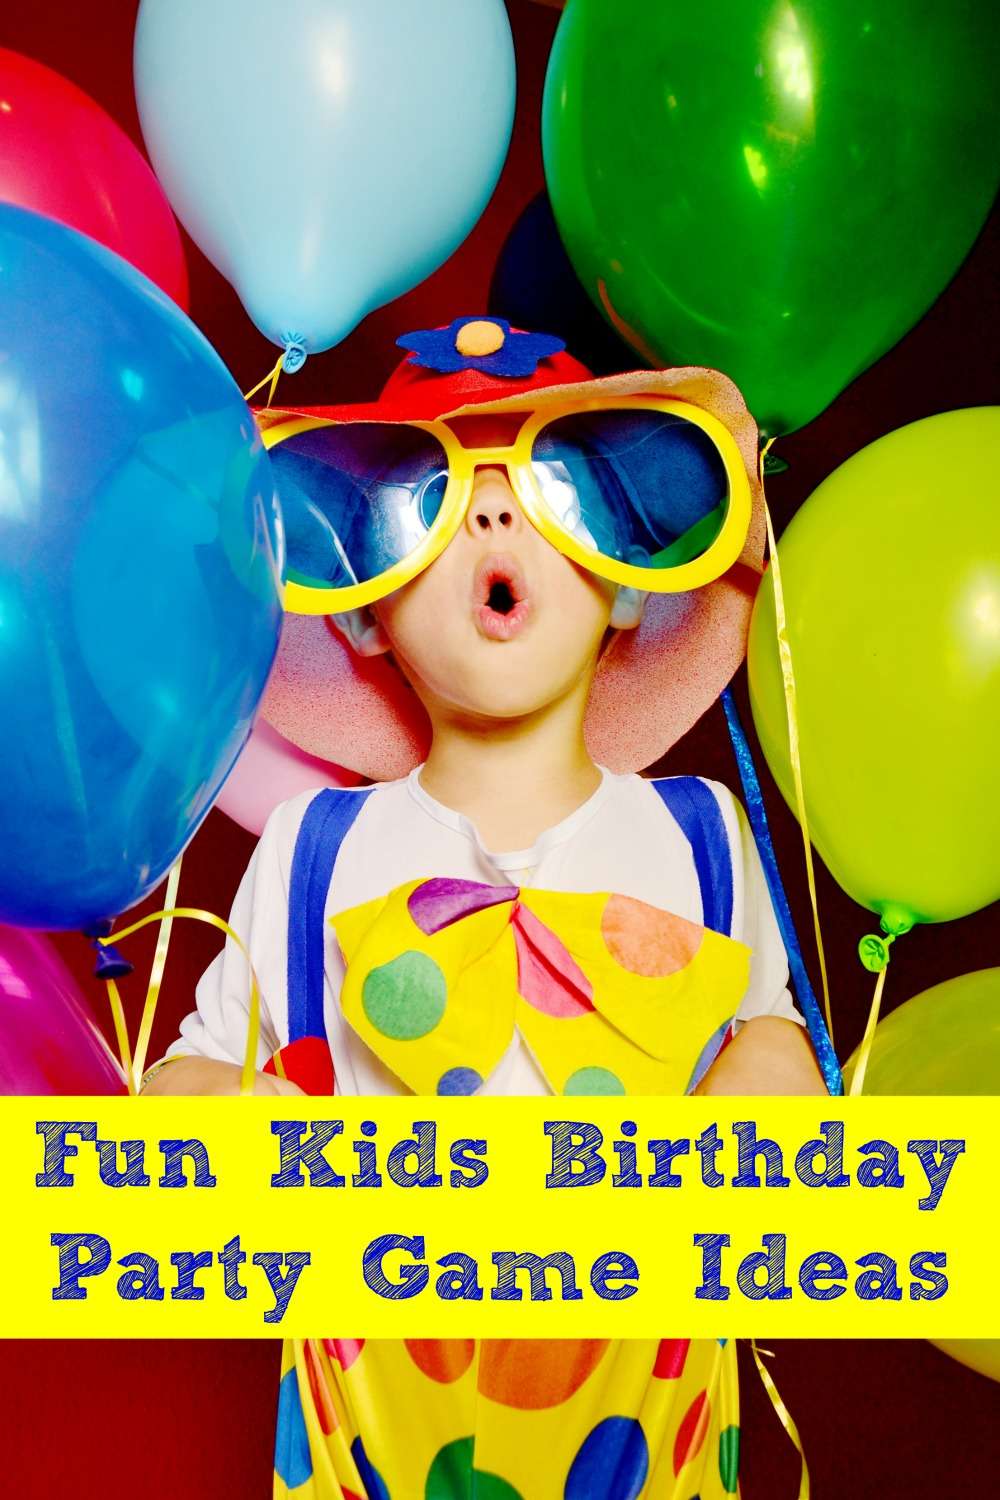 Fun Kids Birthday Party Game Ideas